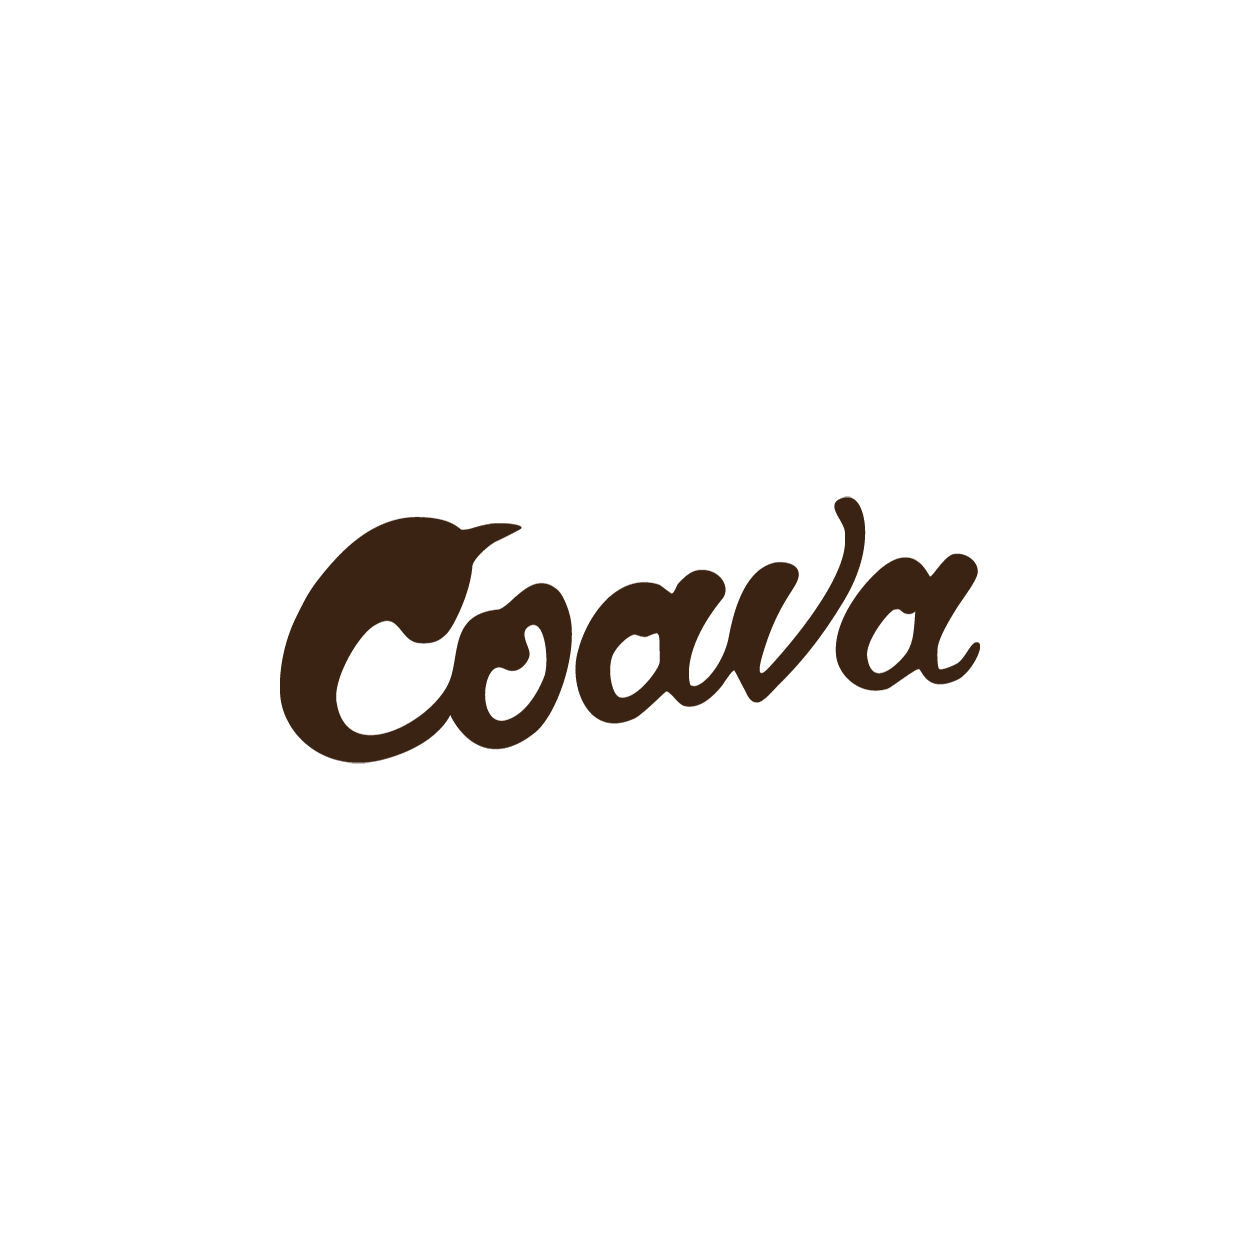 Coava